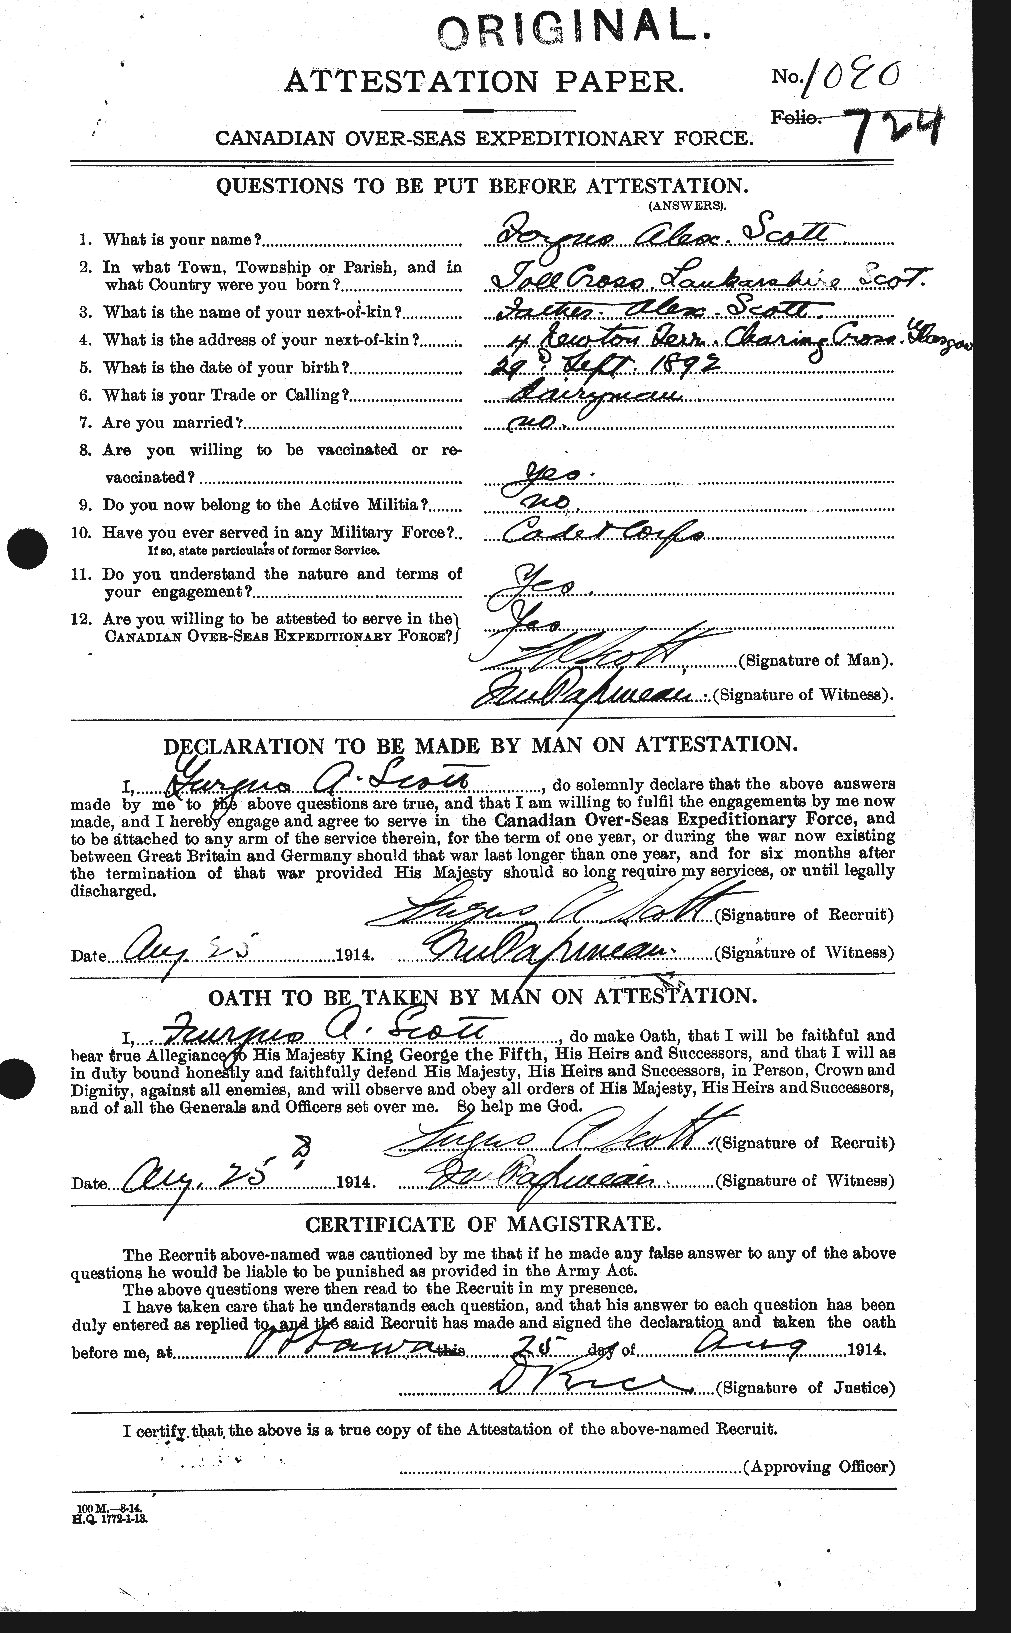 Dossiers du Personnel de la Première Guerre mondiale - CEC 084998a